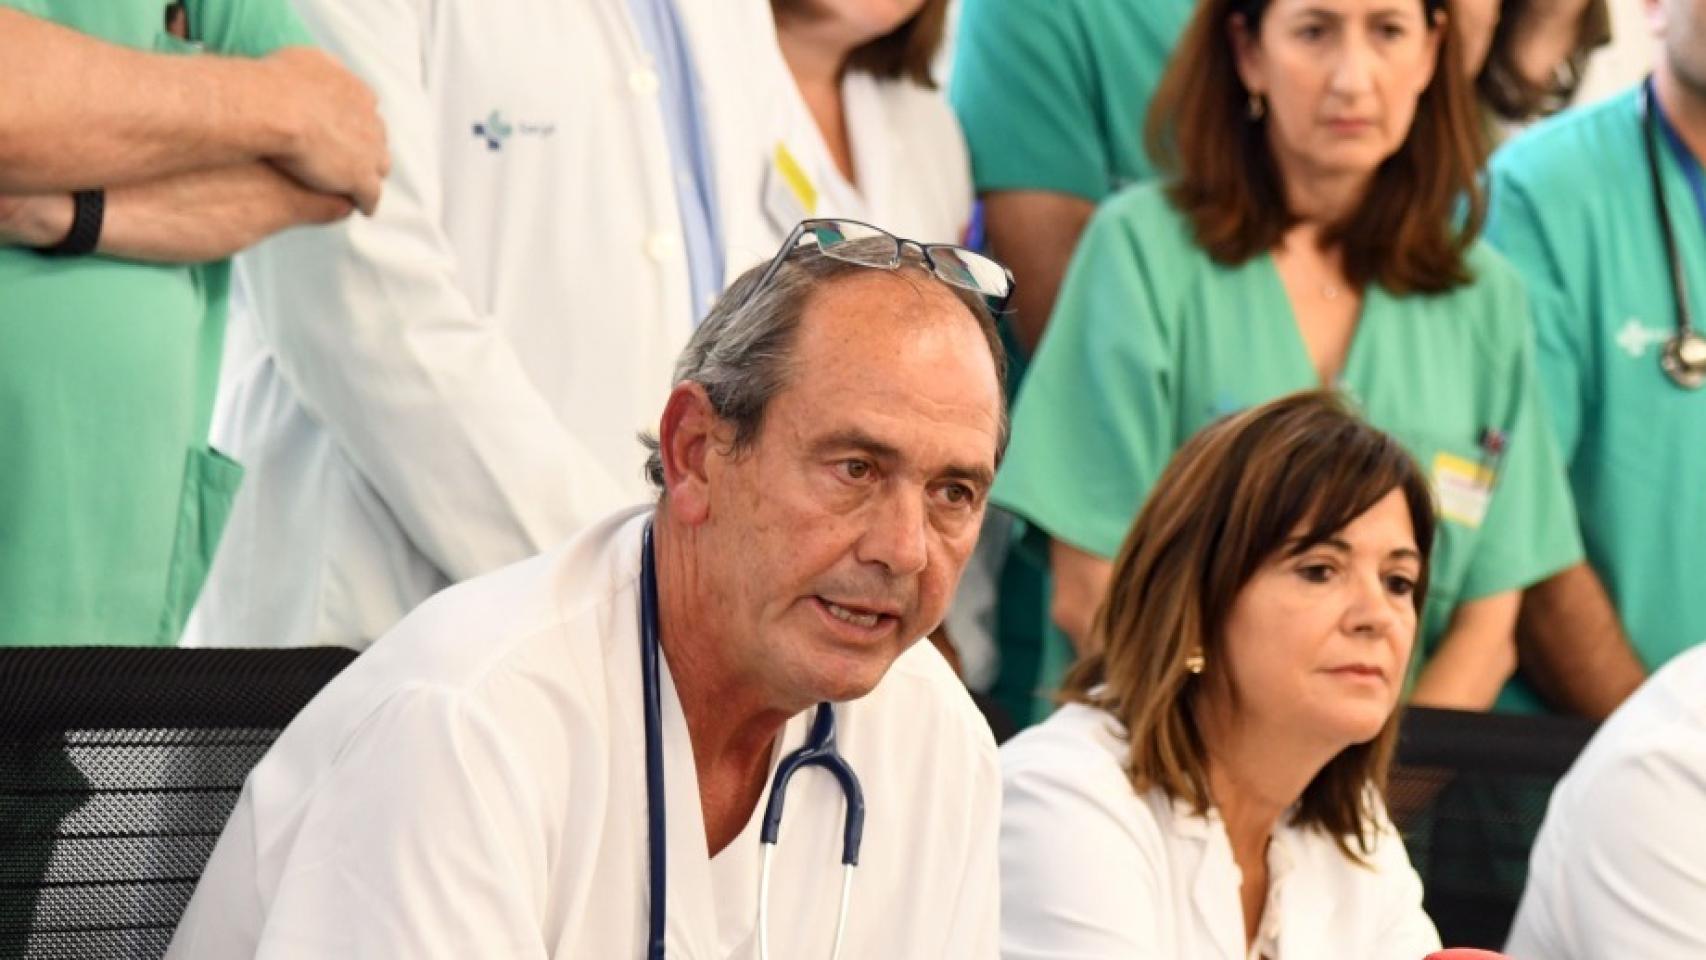 El oncólogo García Girón durante una rueda de prensa pasada